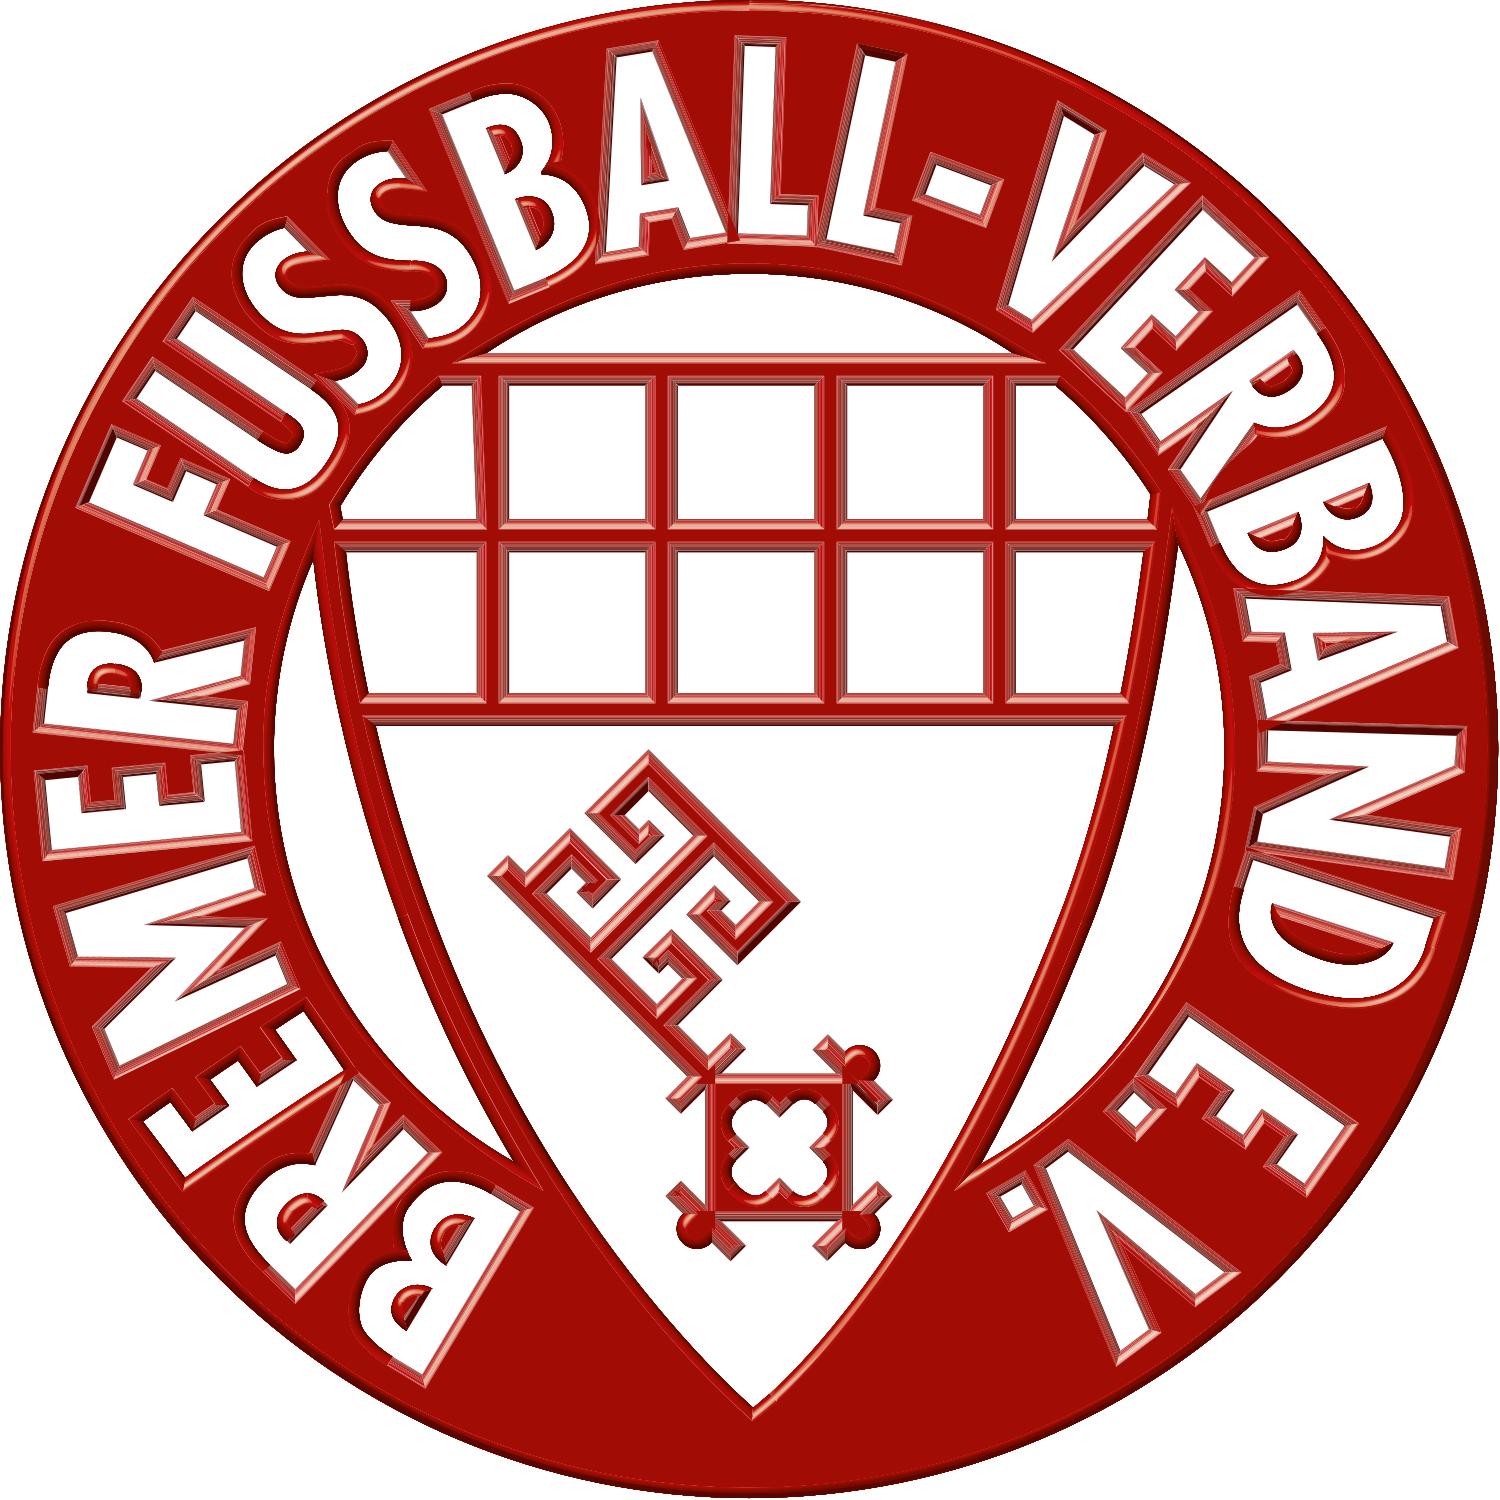 FC Riensberg 11 e.V.